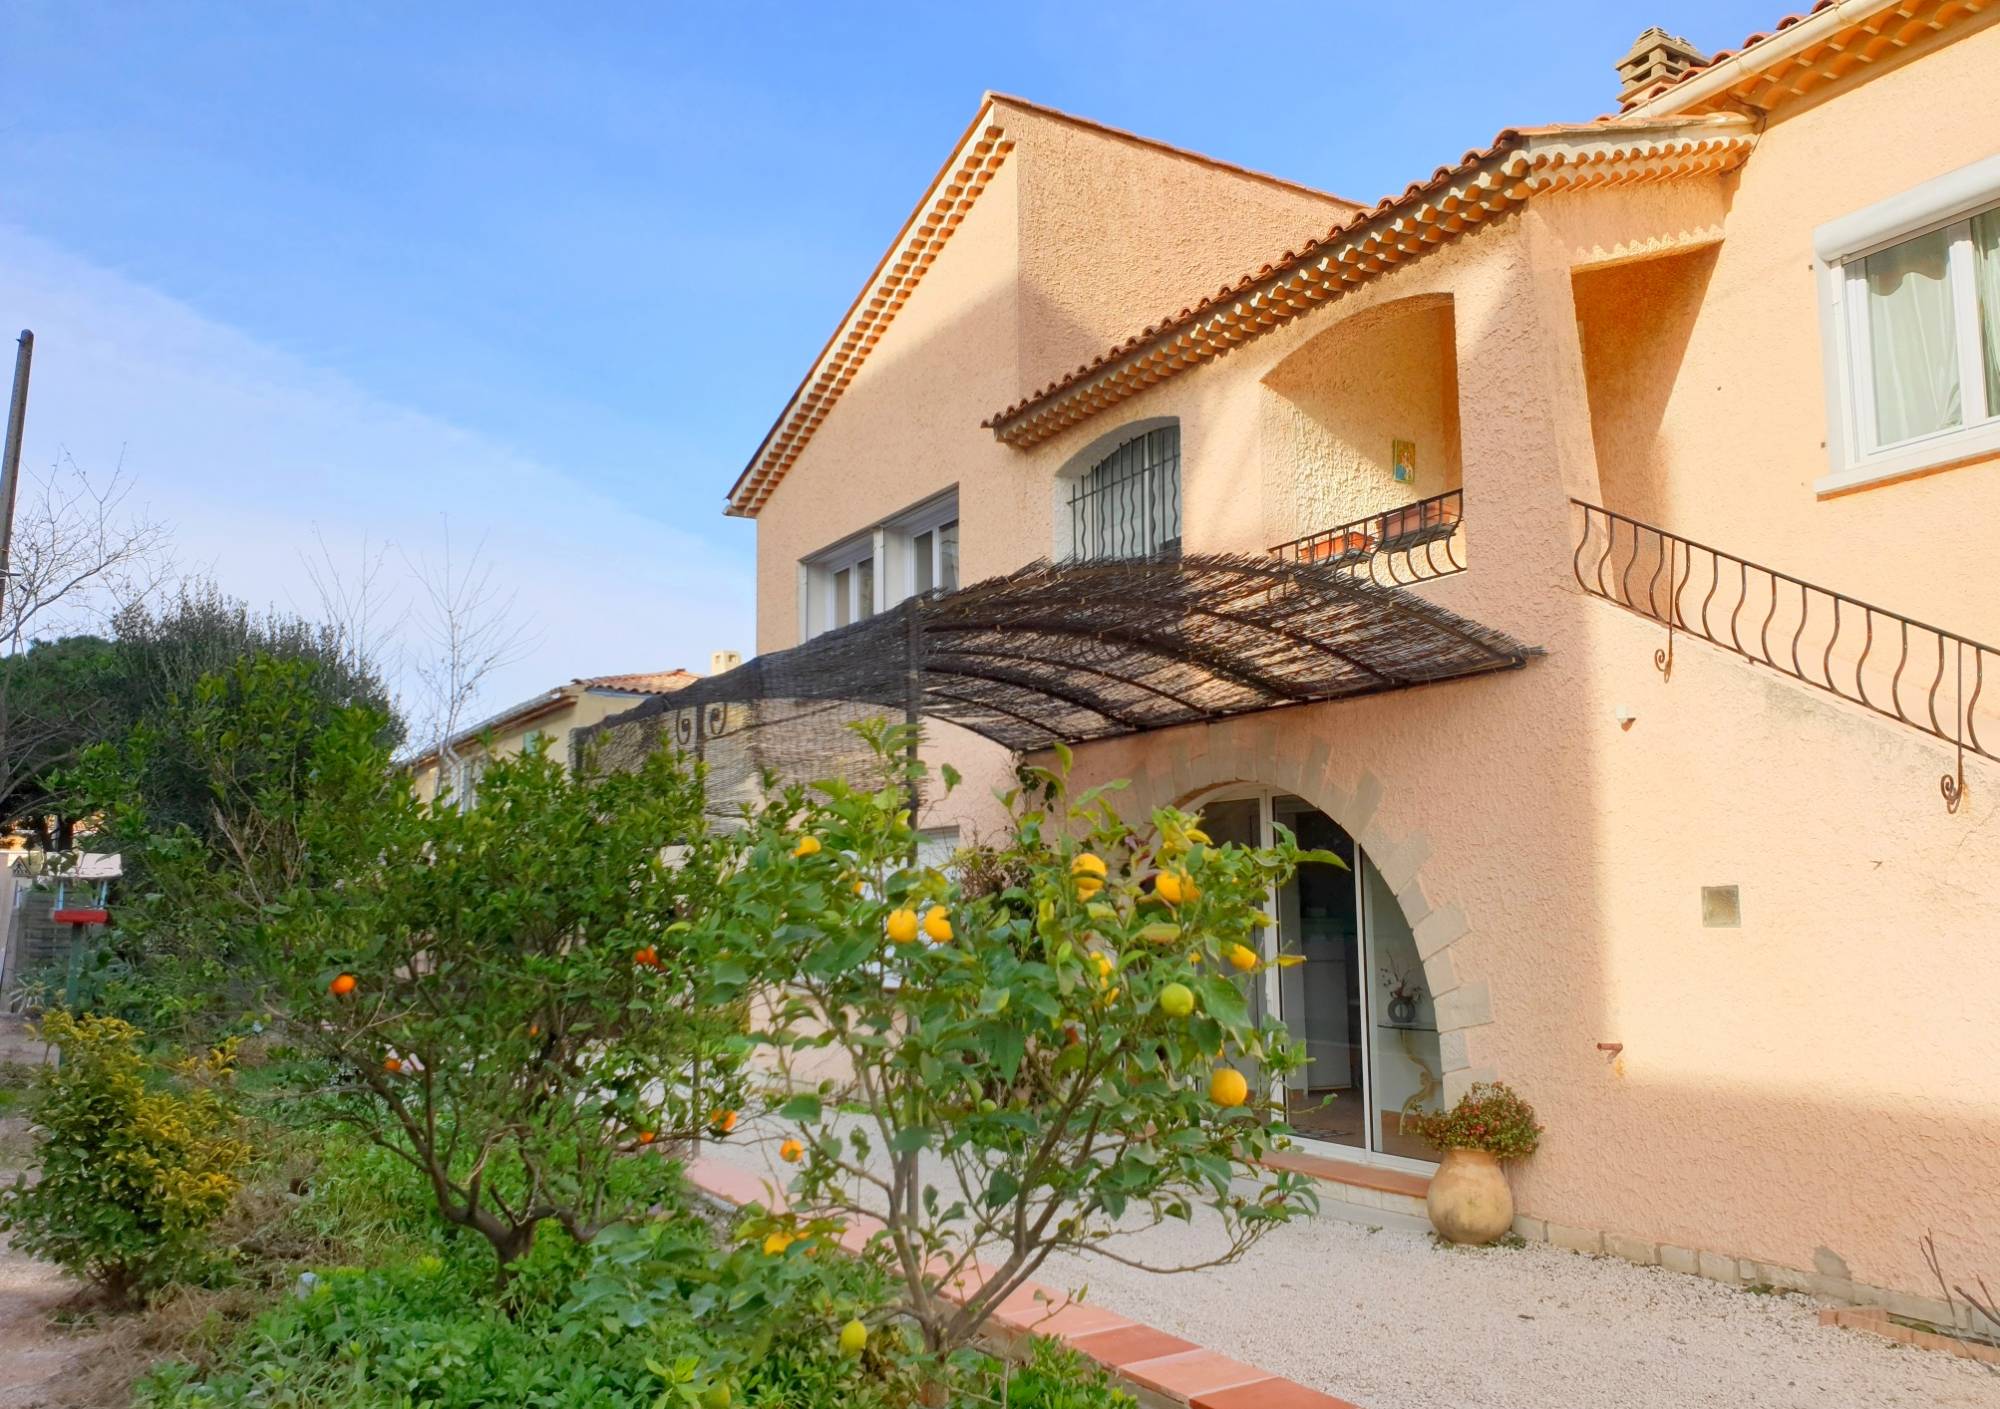 Villa en 2 appartements indépendants à vendre à La Seyne